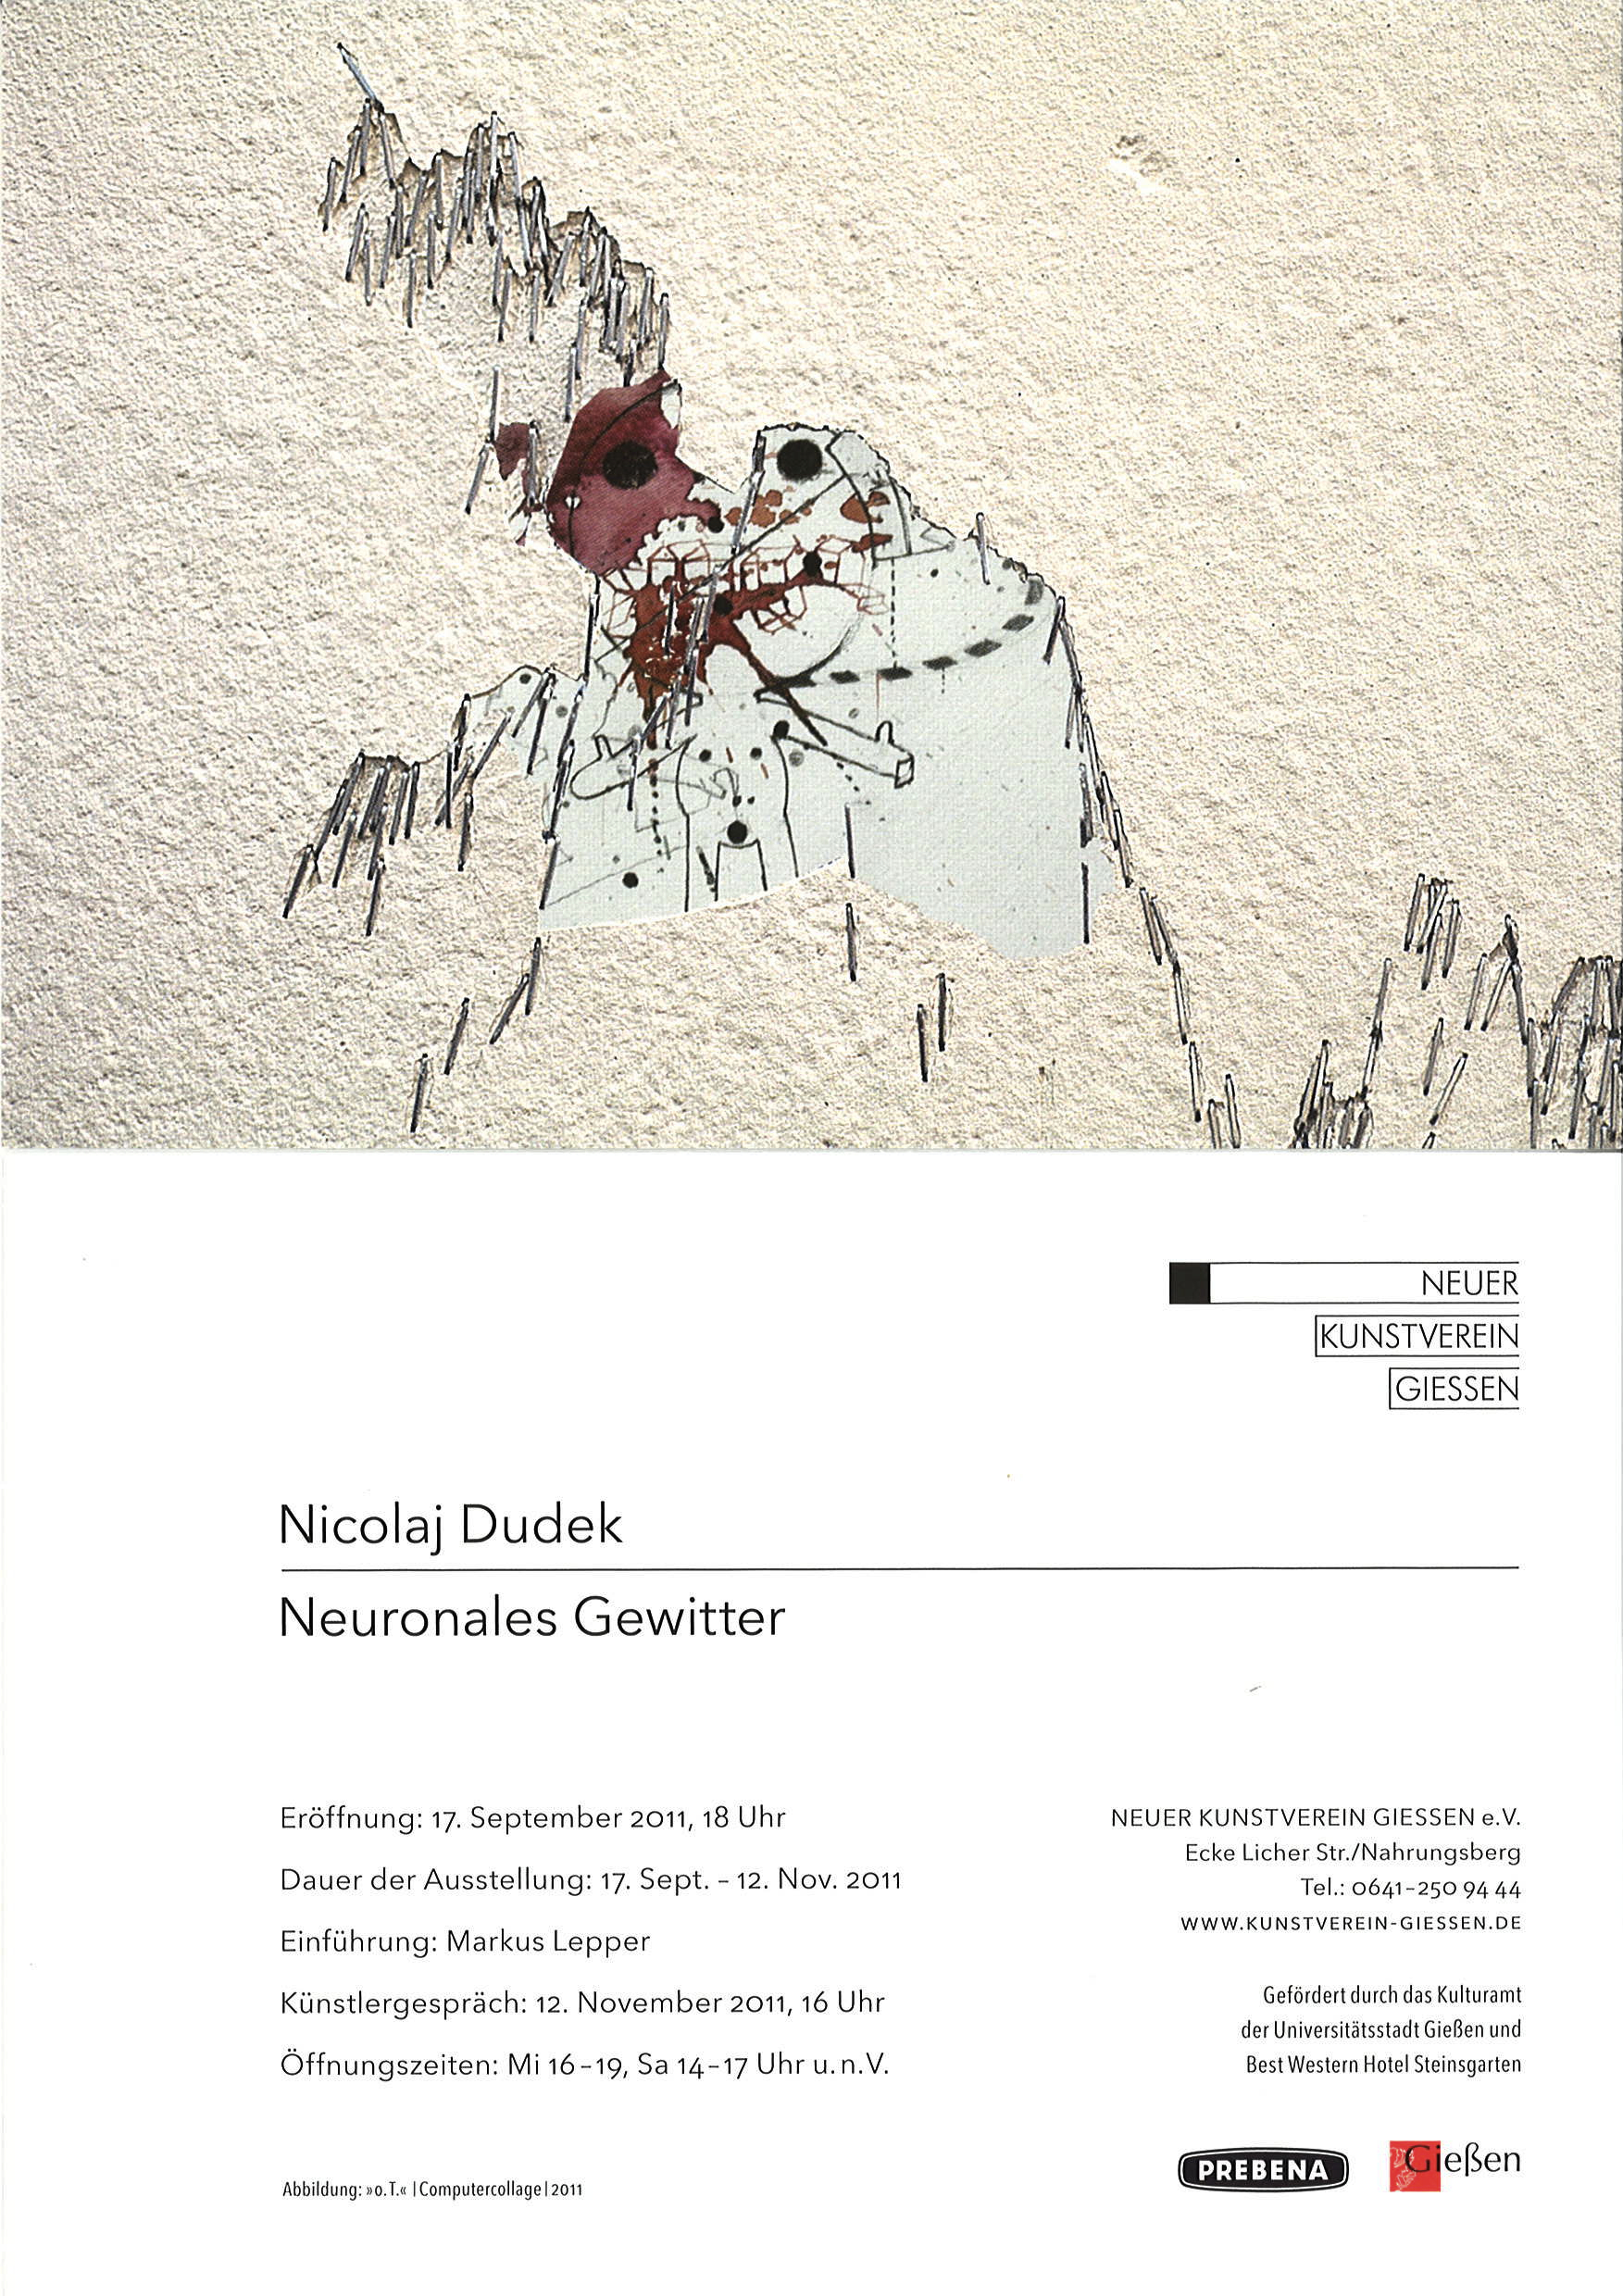 2011 NKV Giessen Invitation Card